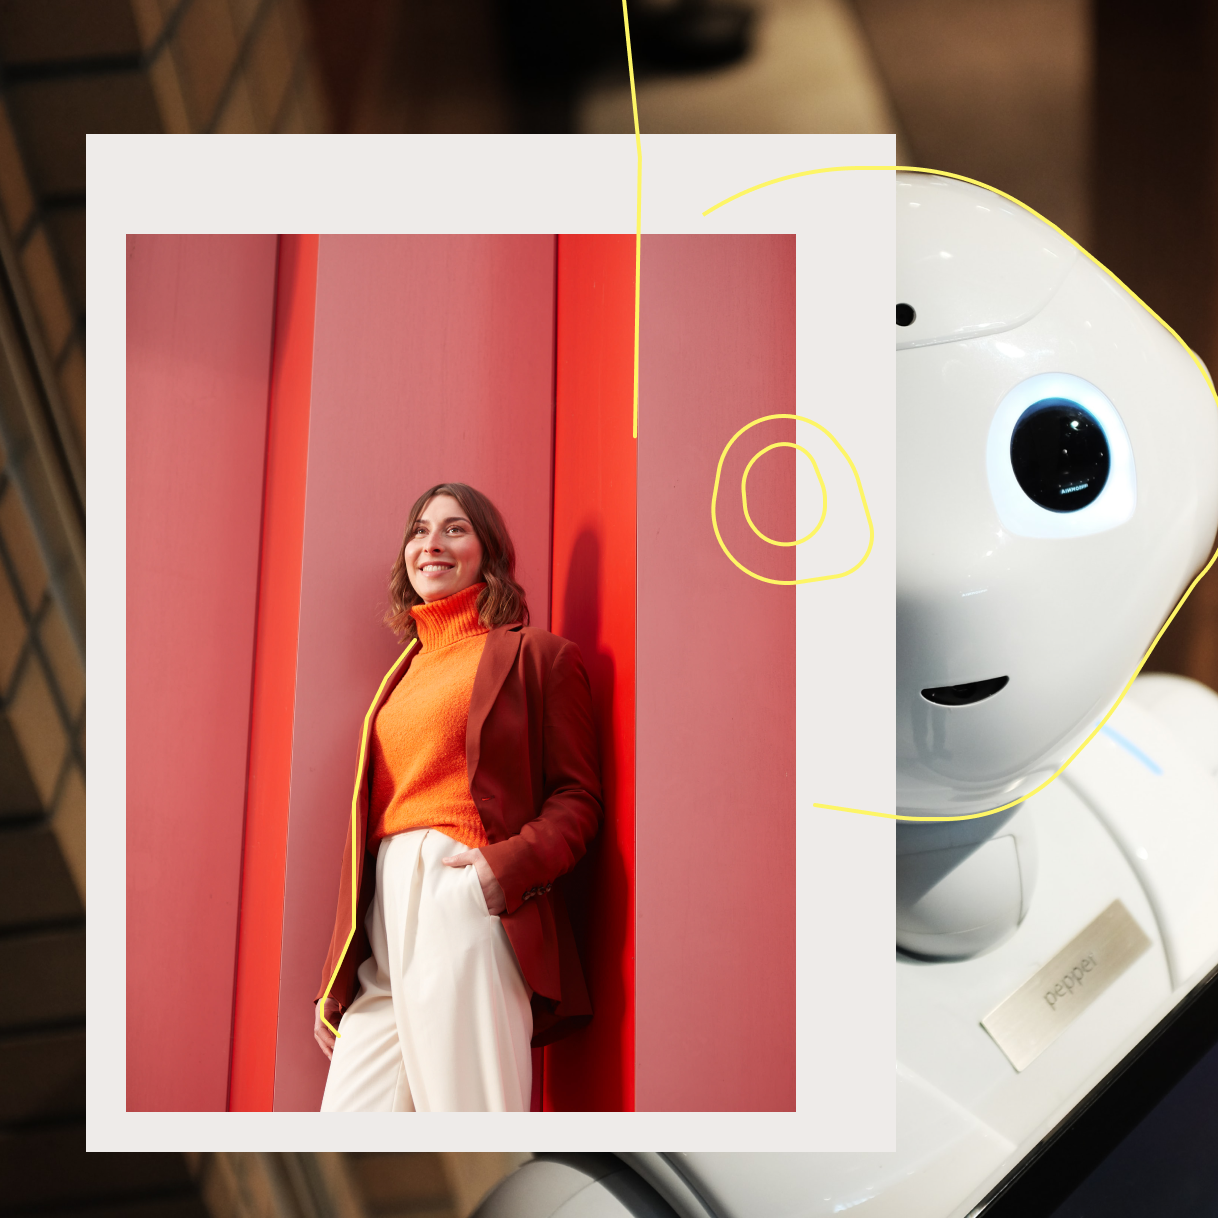 Frau vor roter Wand im Hintergrund weißer Roboter